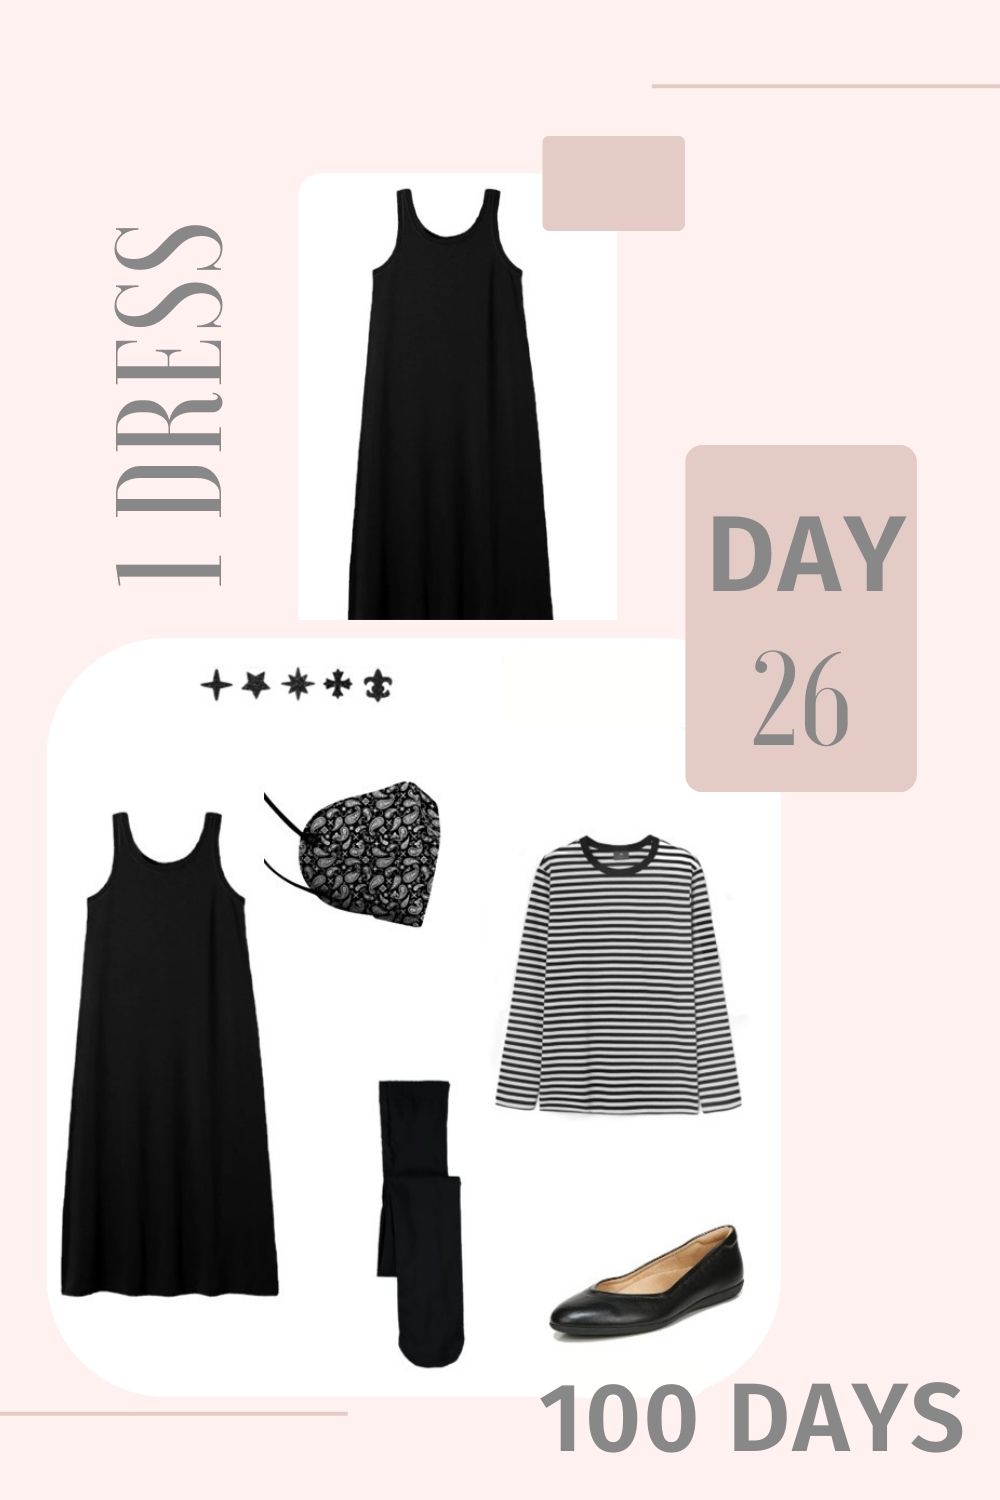 1 Dress 100 Days - Day 26